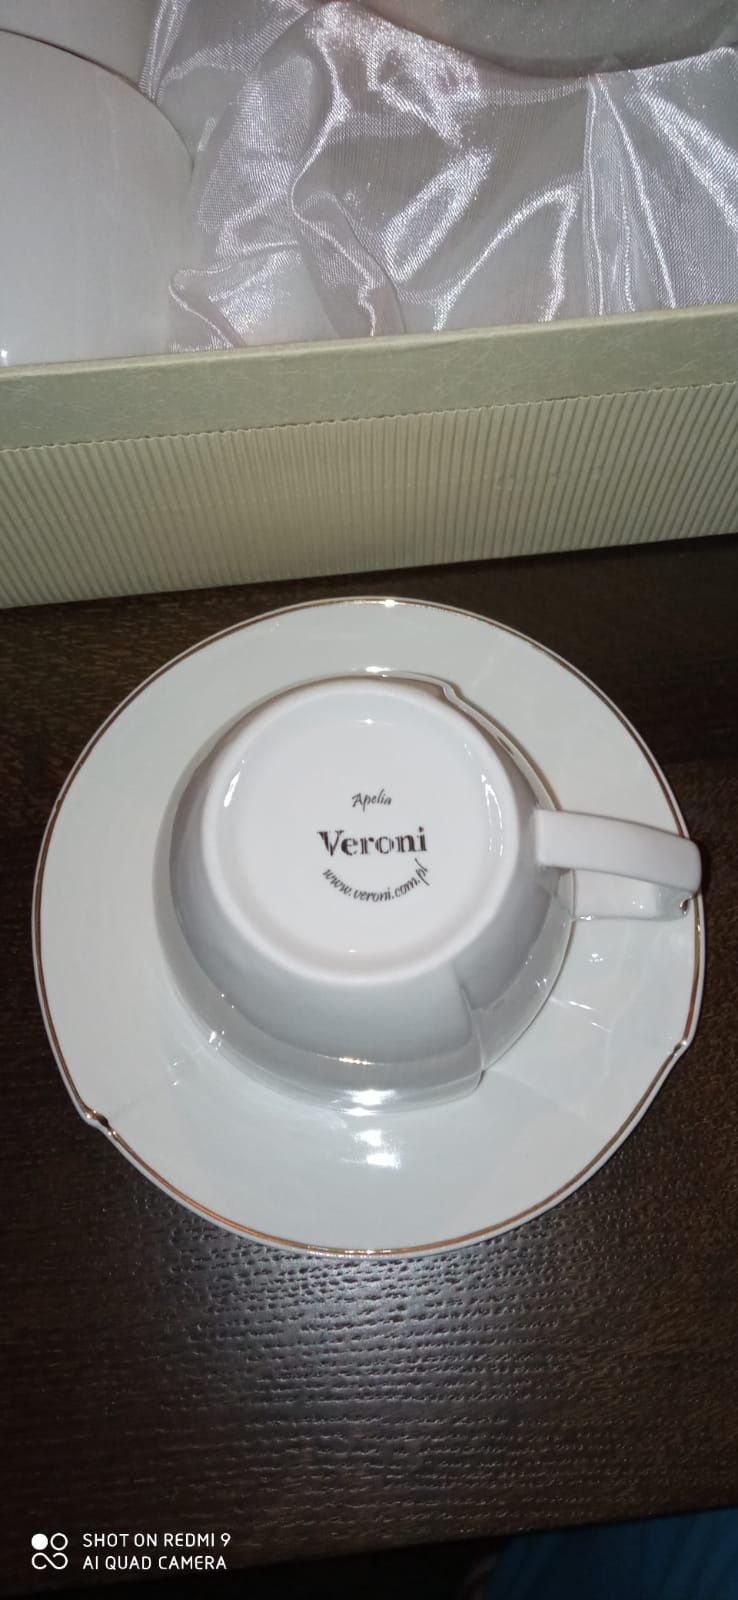 Zestaw 6 filiżanek 220 ml. z podstawkami firmy Veroni.